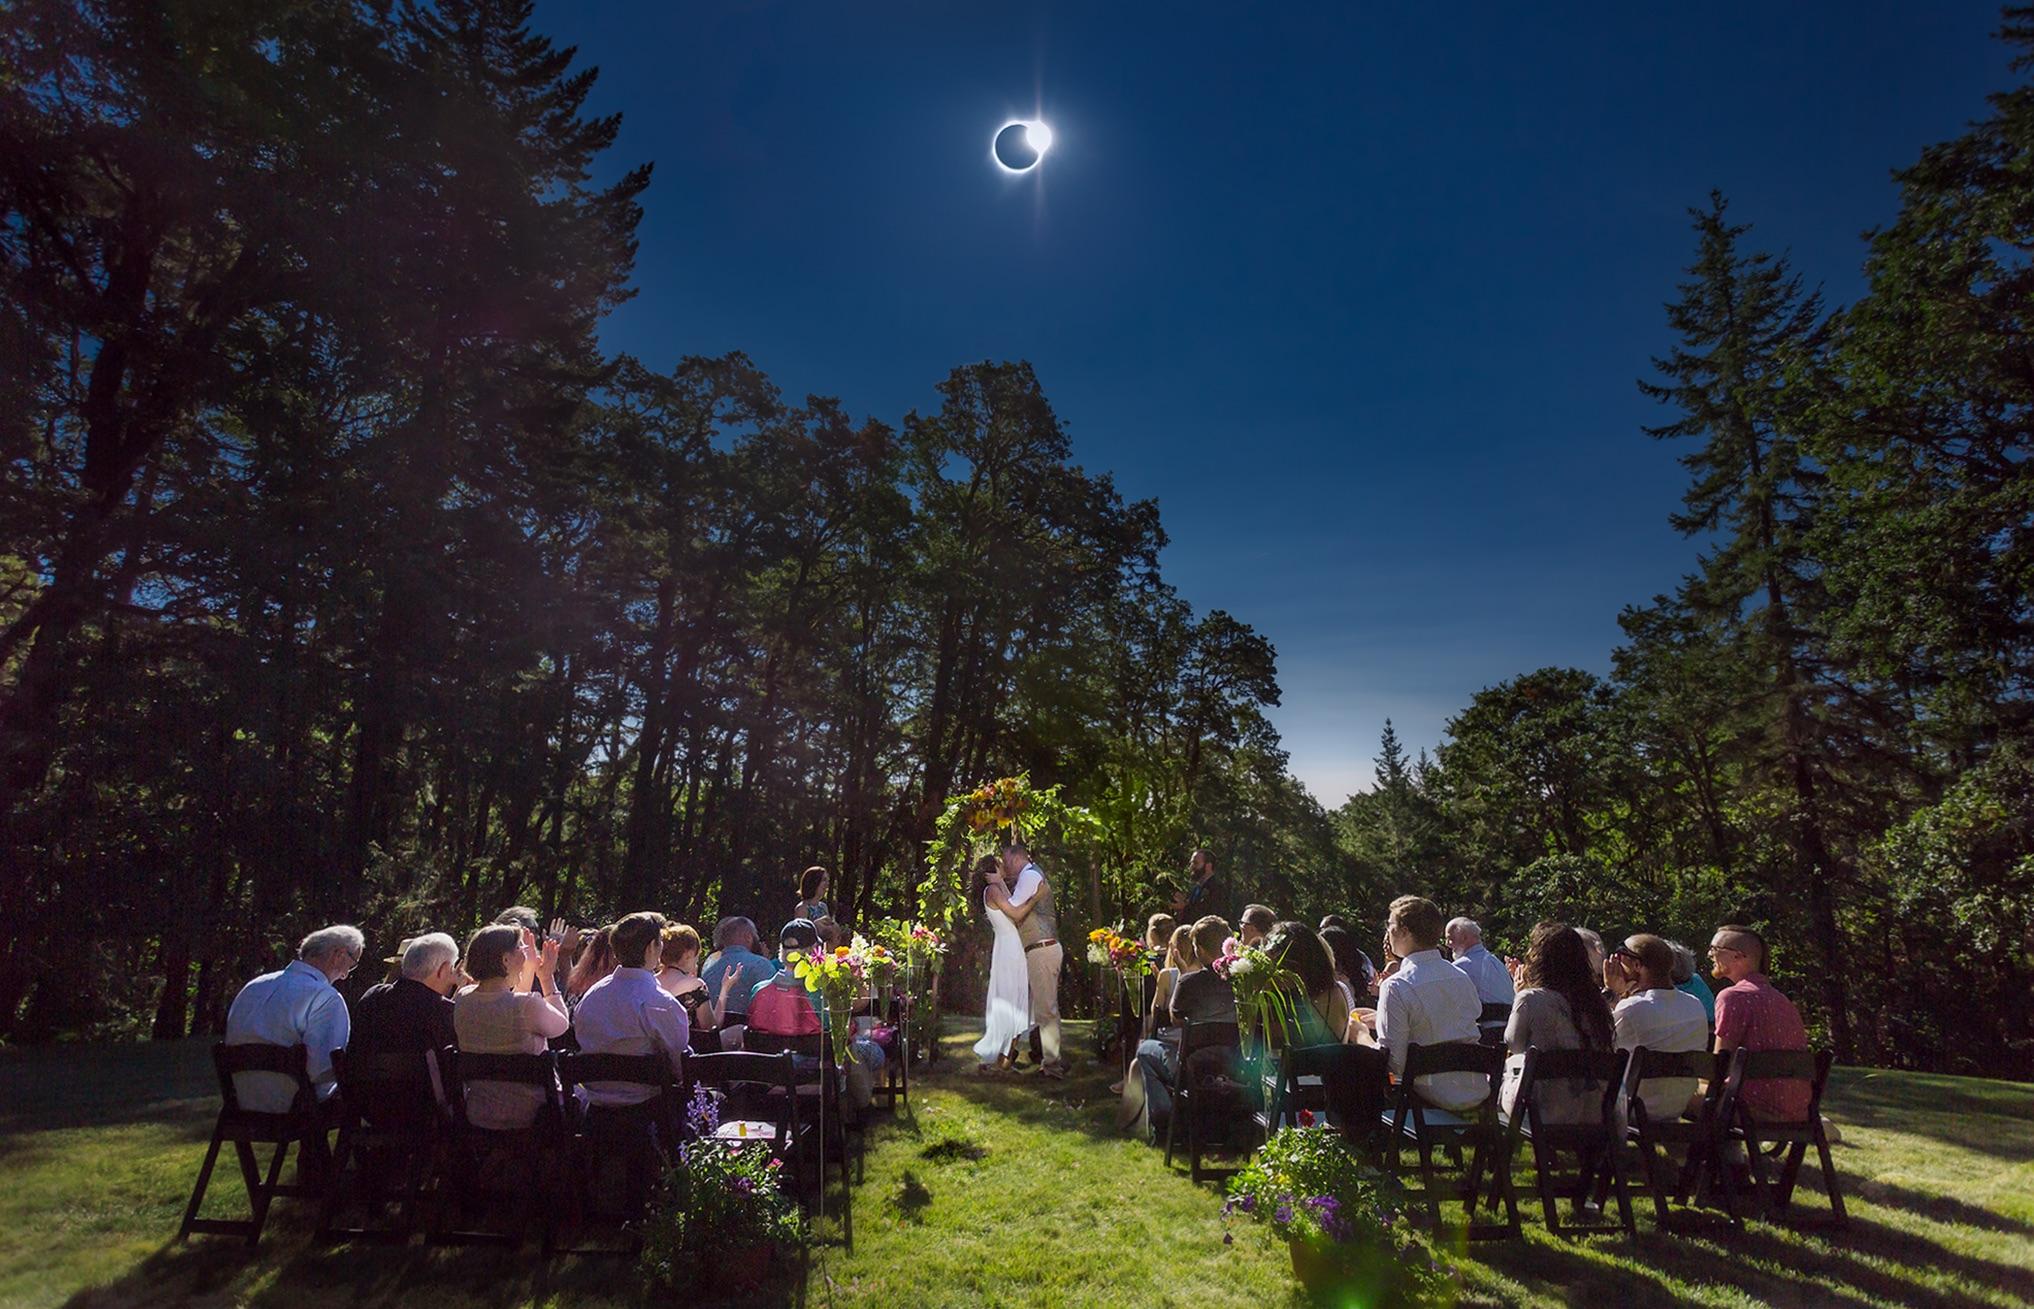 outdoor eclipse wedding reception under the solar eclipse